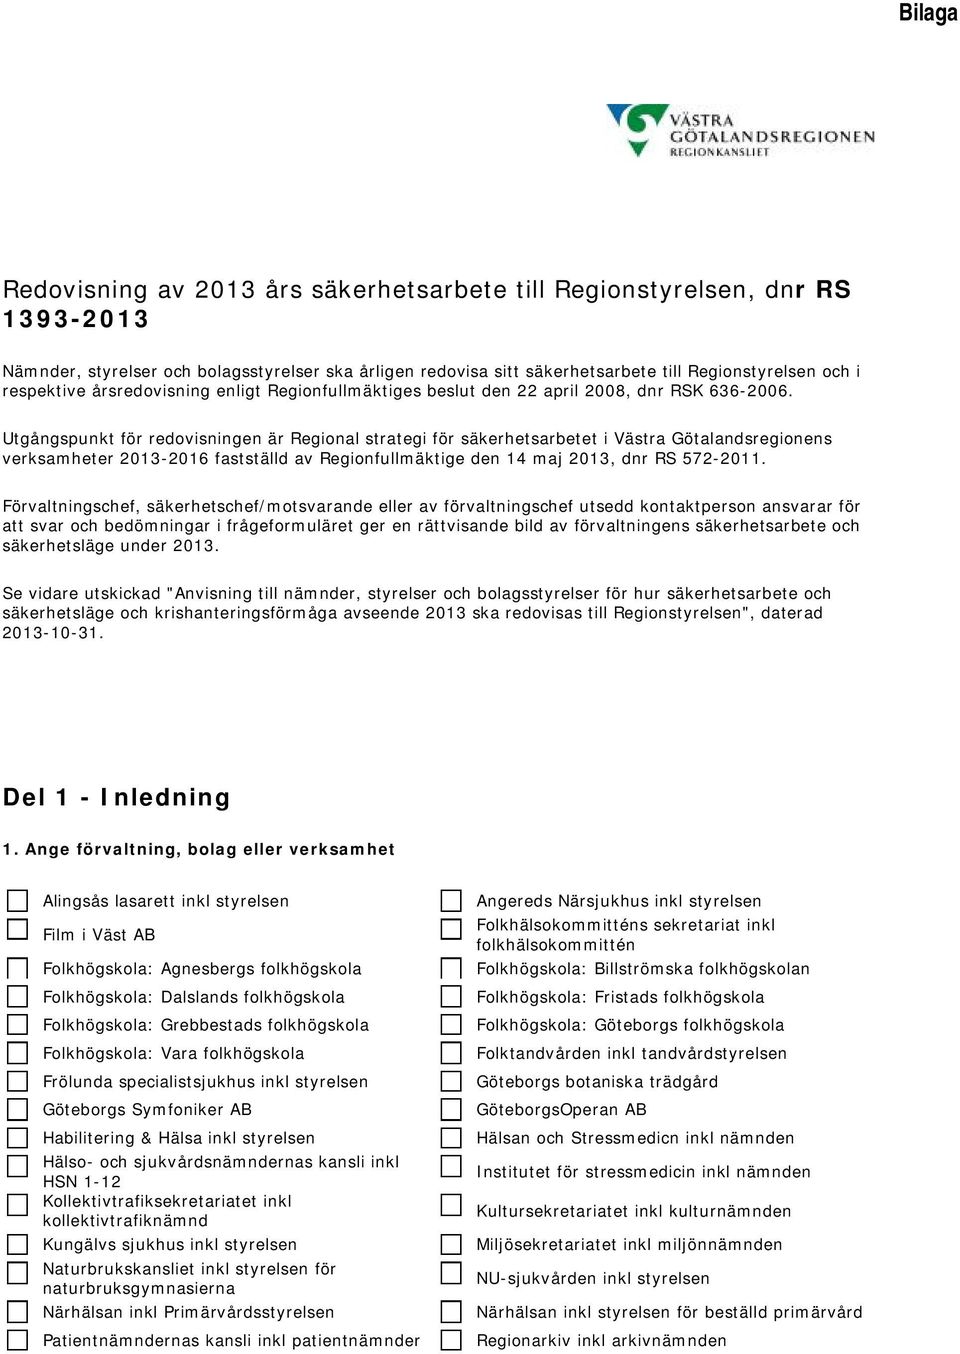 Utgångspunkt för redovisningen är Regional strategi för säkerhetsarbetet i Västra Götalandsregionens verksamheter 2013-2016 fastställd av Regionfullmäktige den 14 maj 2013, dnr RS 572-2011.